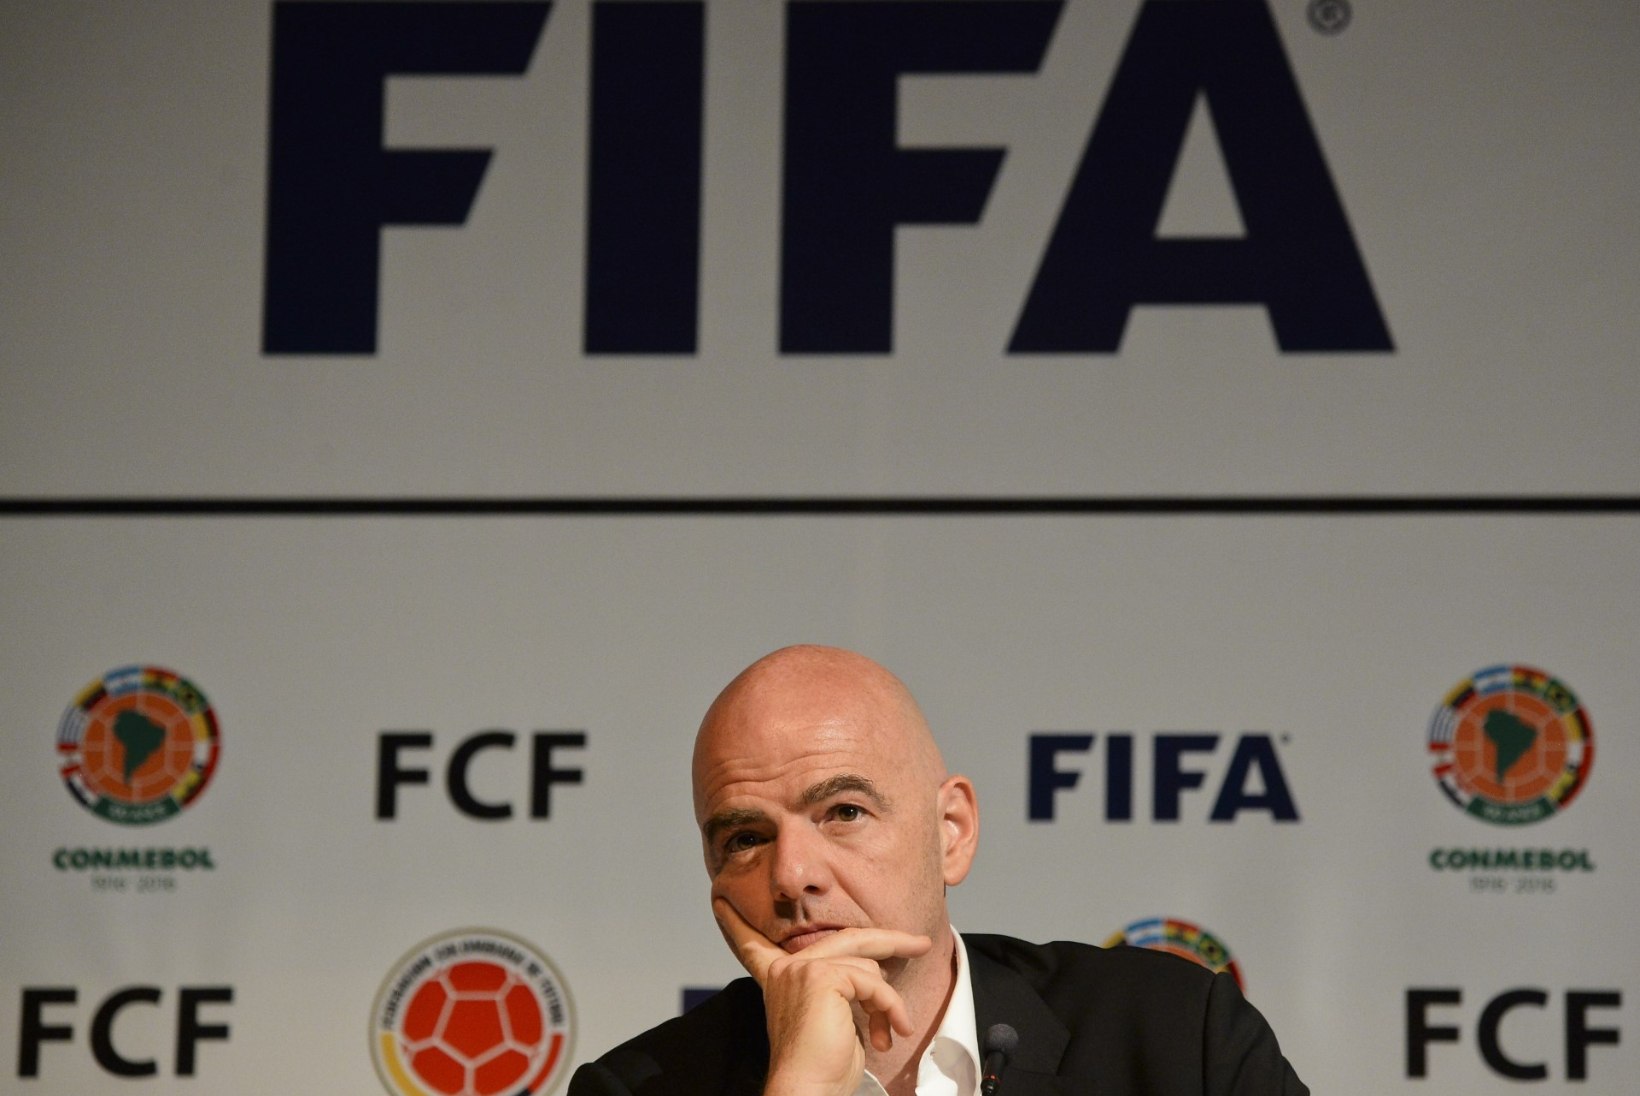 JUBA JÄLLE! FIFA verivärske president peab tõrjuma korruptsioonisüüdistusi